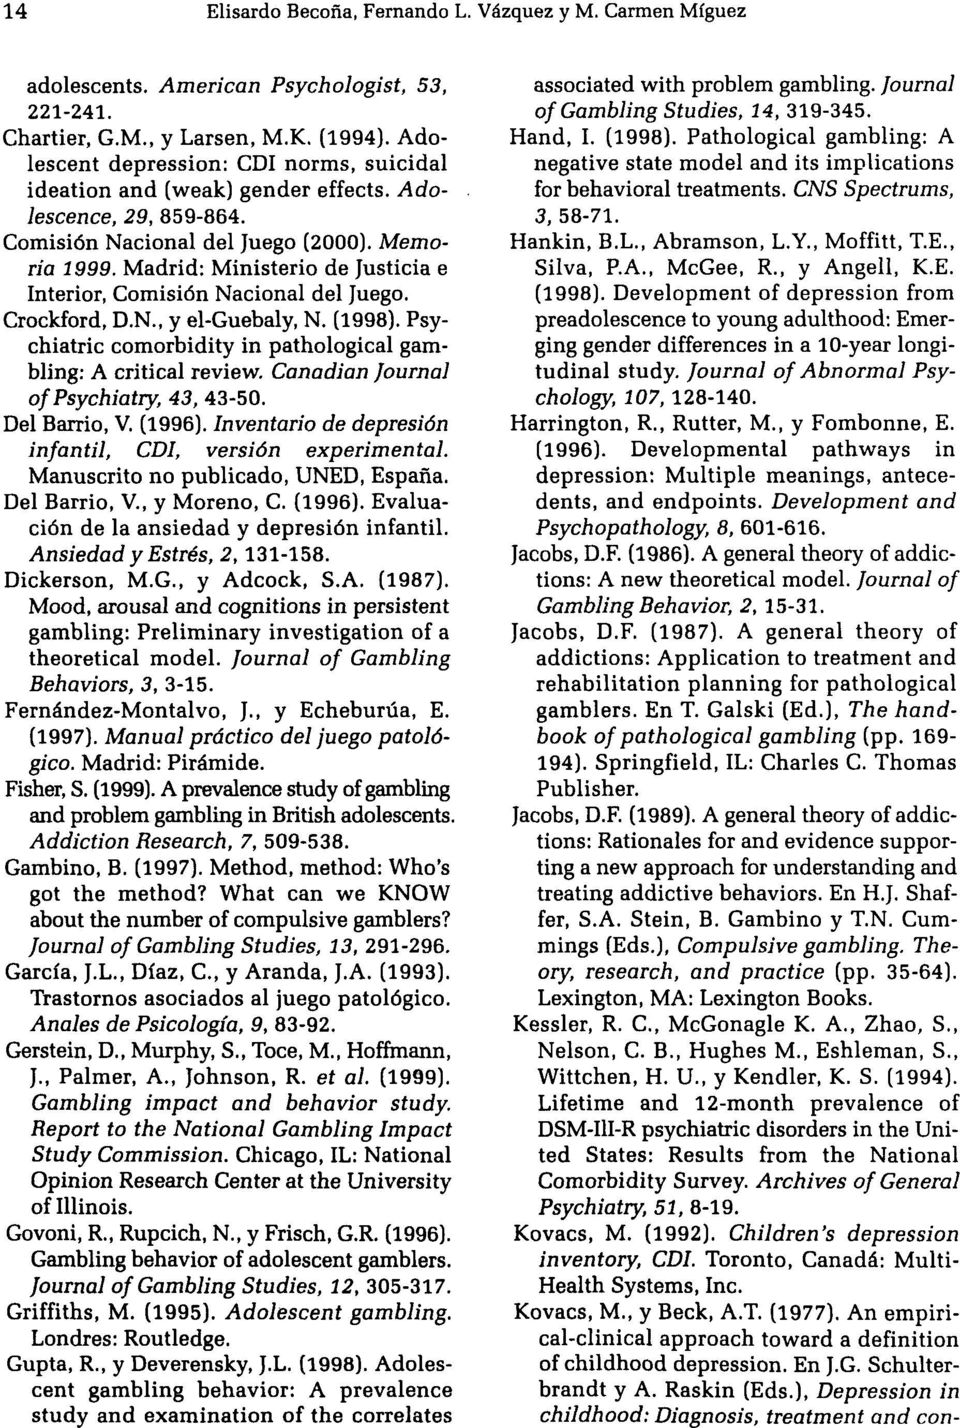 Madrid: Ministerio de Justicia e Interior, Comisión Nacional del Juego. Crockford, D.N., y el-guebaly, N. (1998). Psychiatric comorbidity in pathological gambling: A critical review.